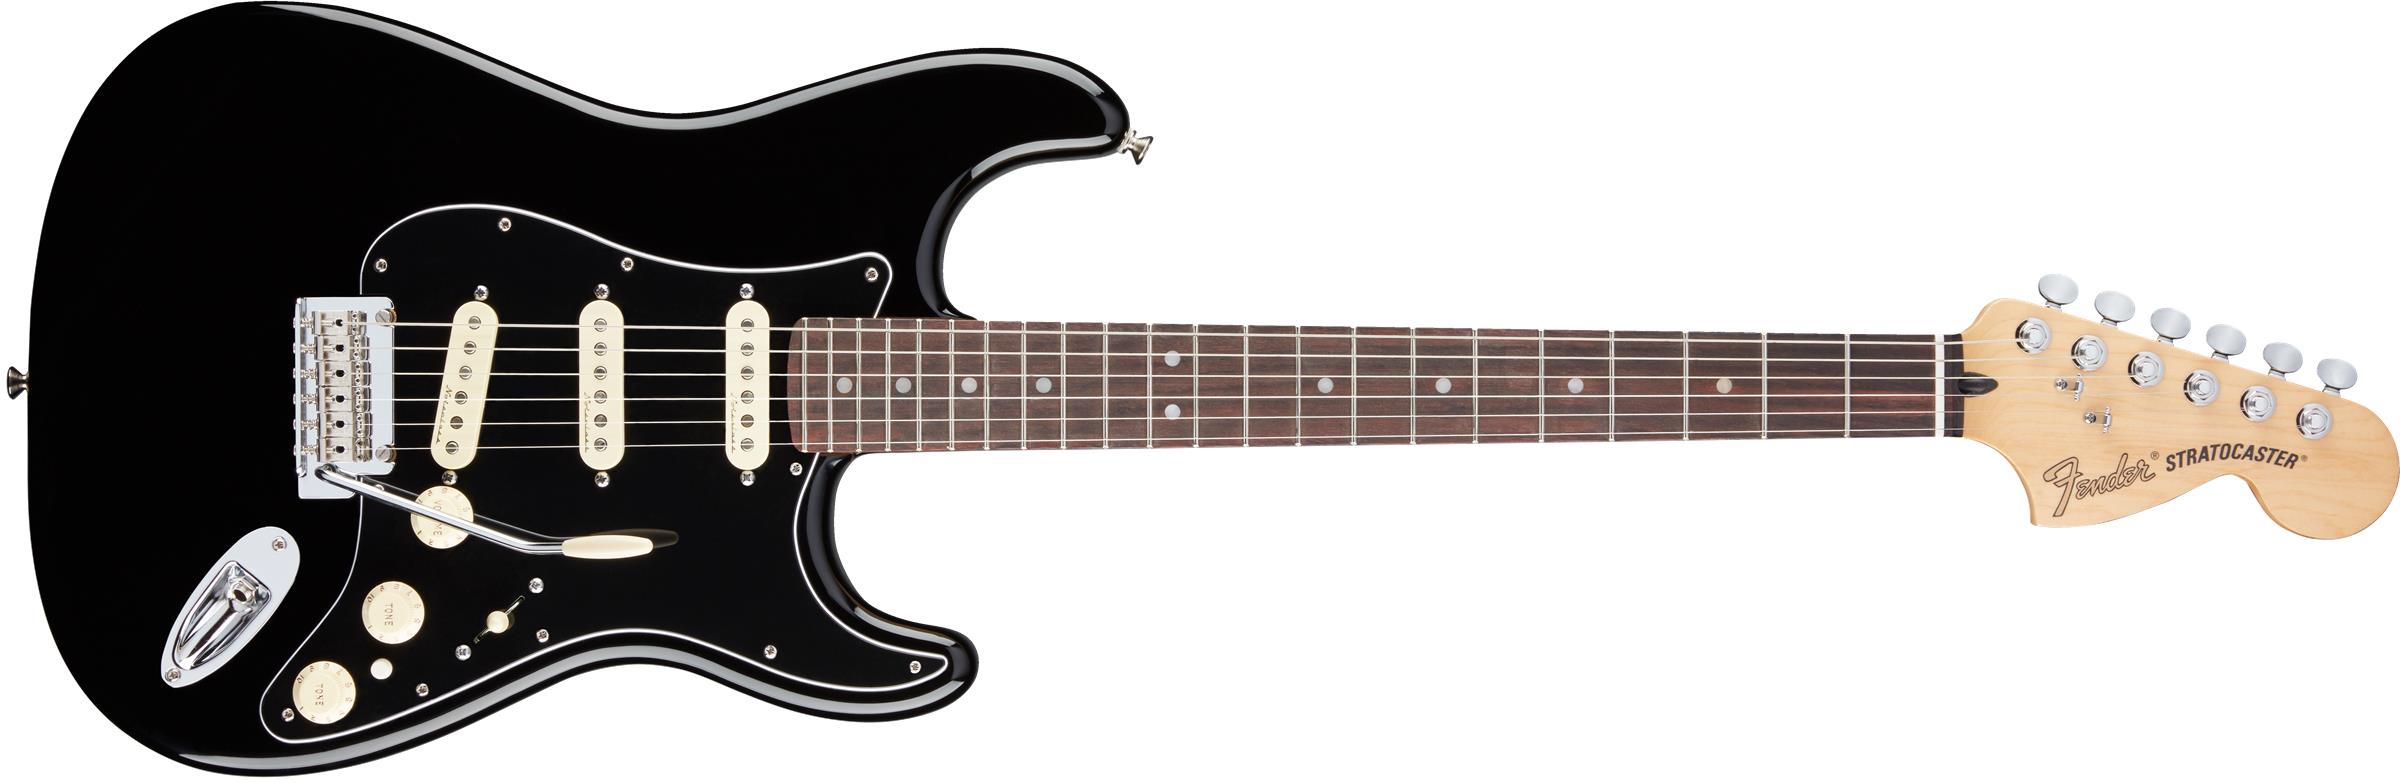 Fender Deluxe Stratocaster Black Main